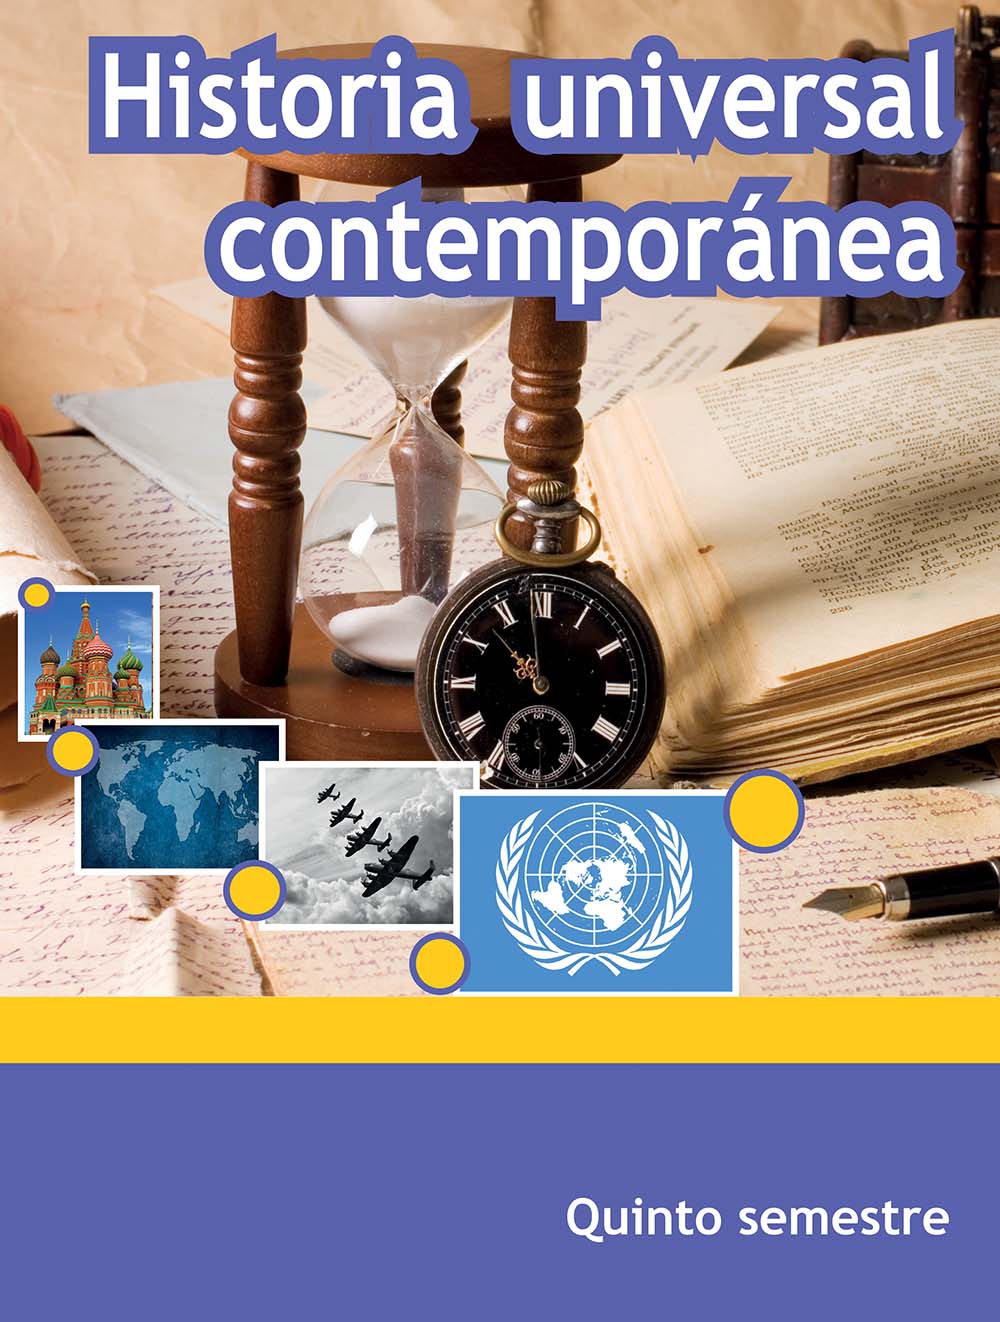 Historia Universal Contemporánea. 5o semestre. , Editorial: Secretaría de Educación Pública, Nivel: Telebachillerato, Grado: 5